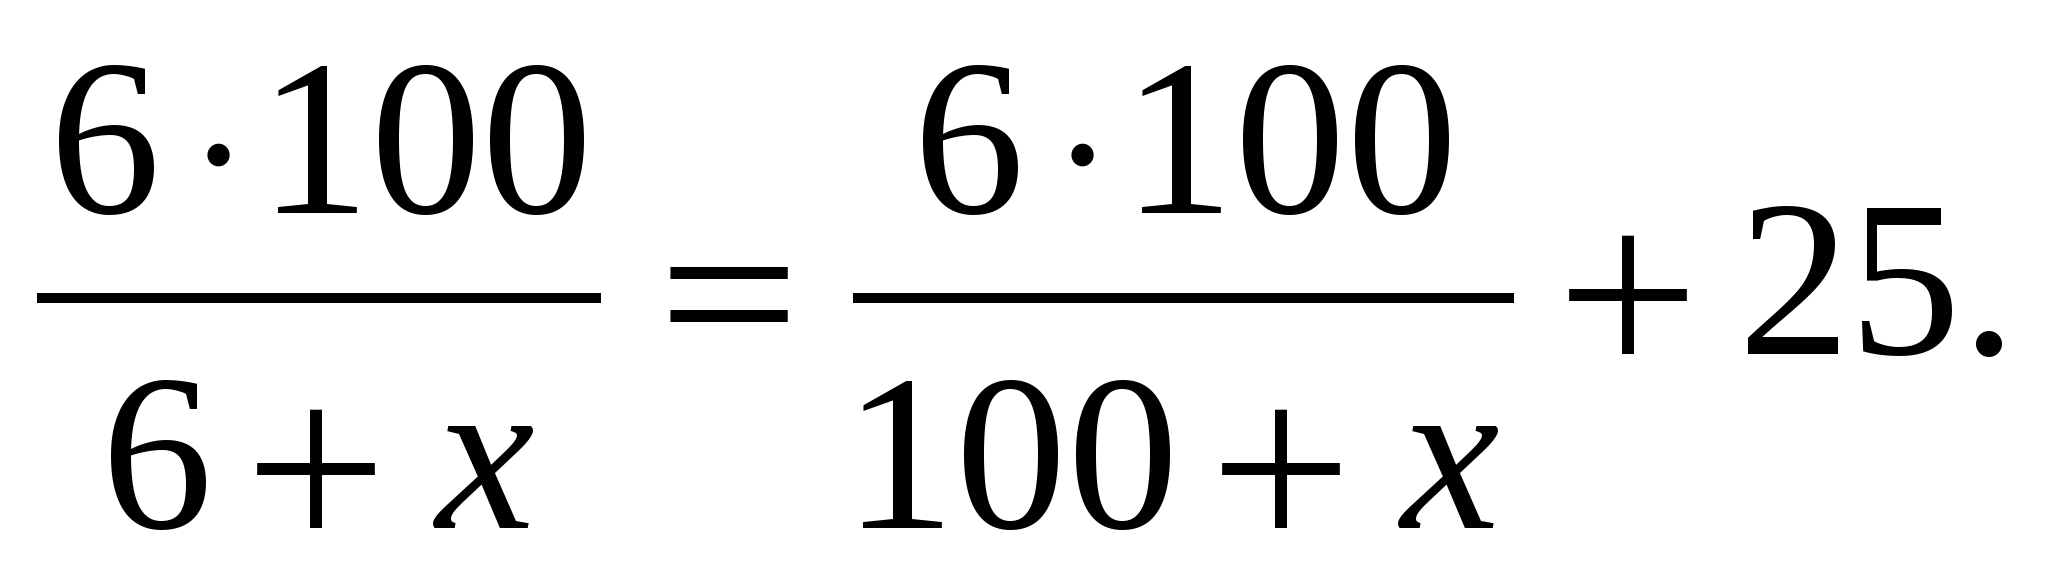 Программа элективного курса по математике 10класс